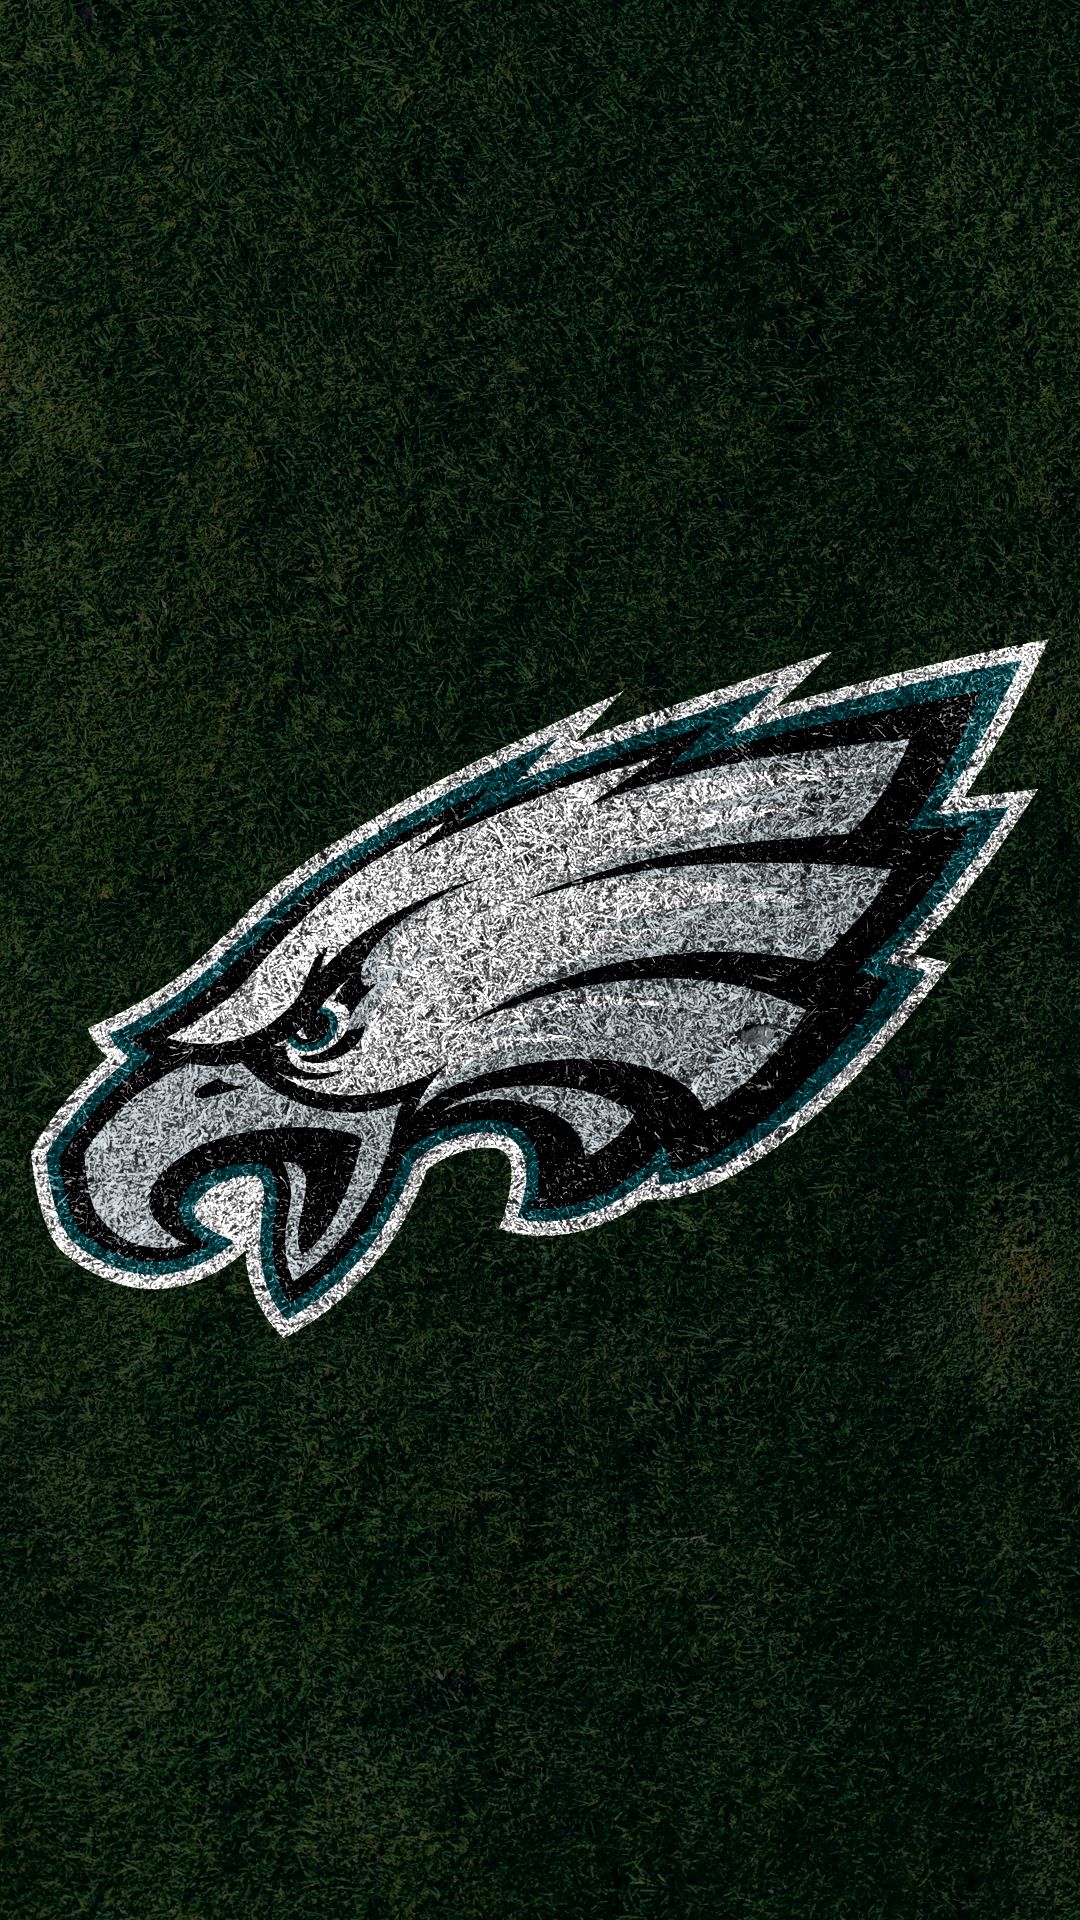 philadelphia eagles, sports, nfl, emblem, logo, football 2160p